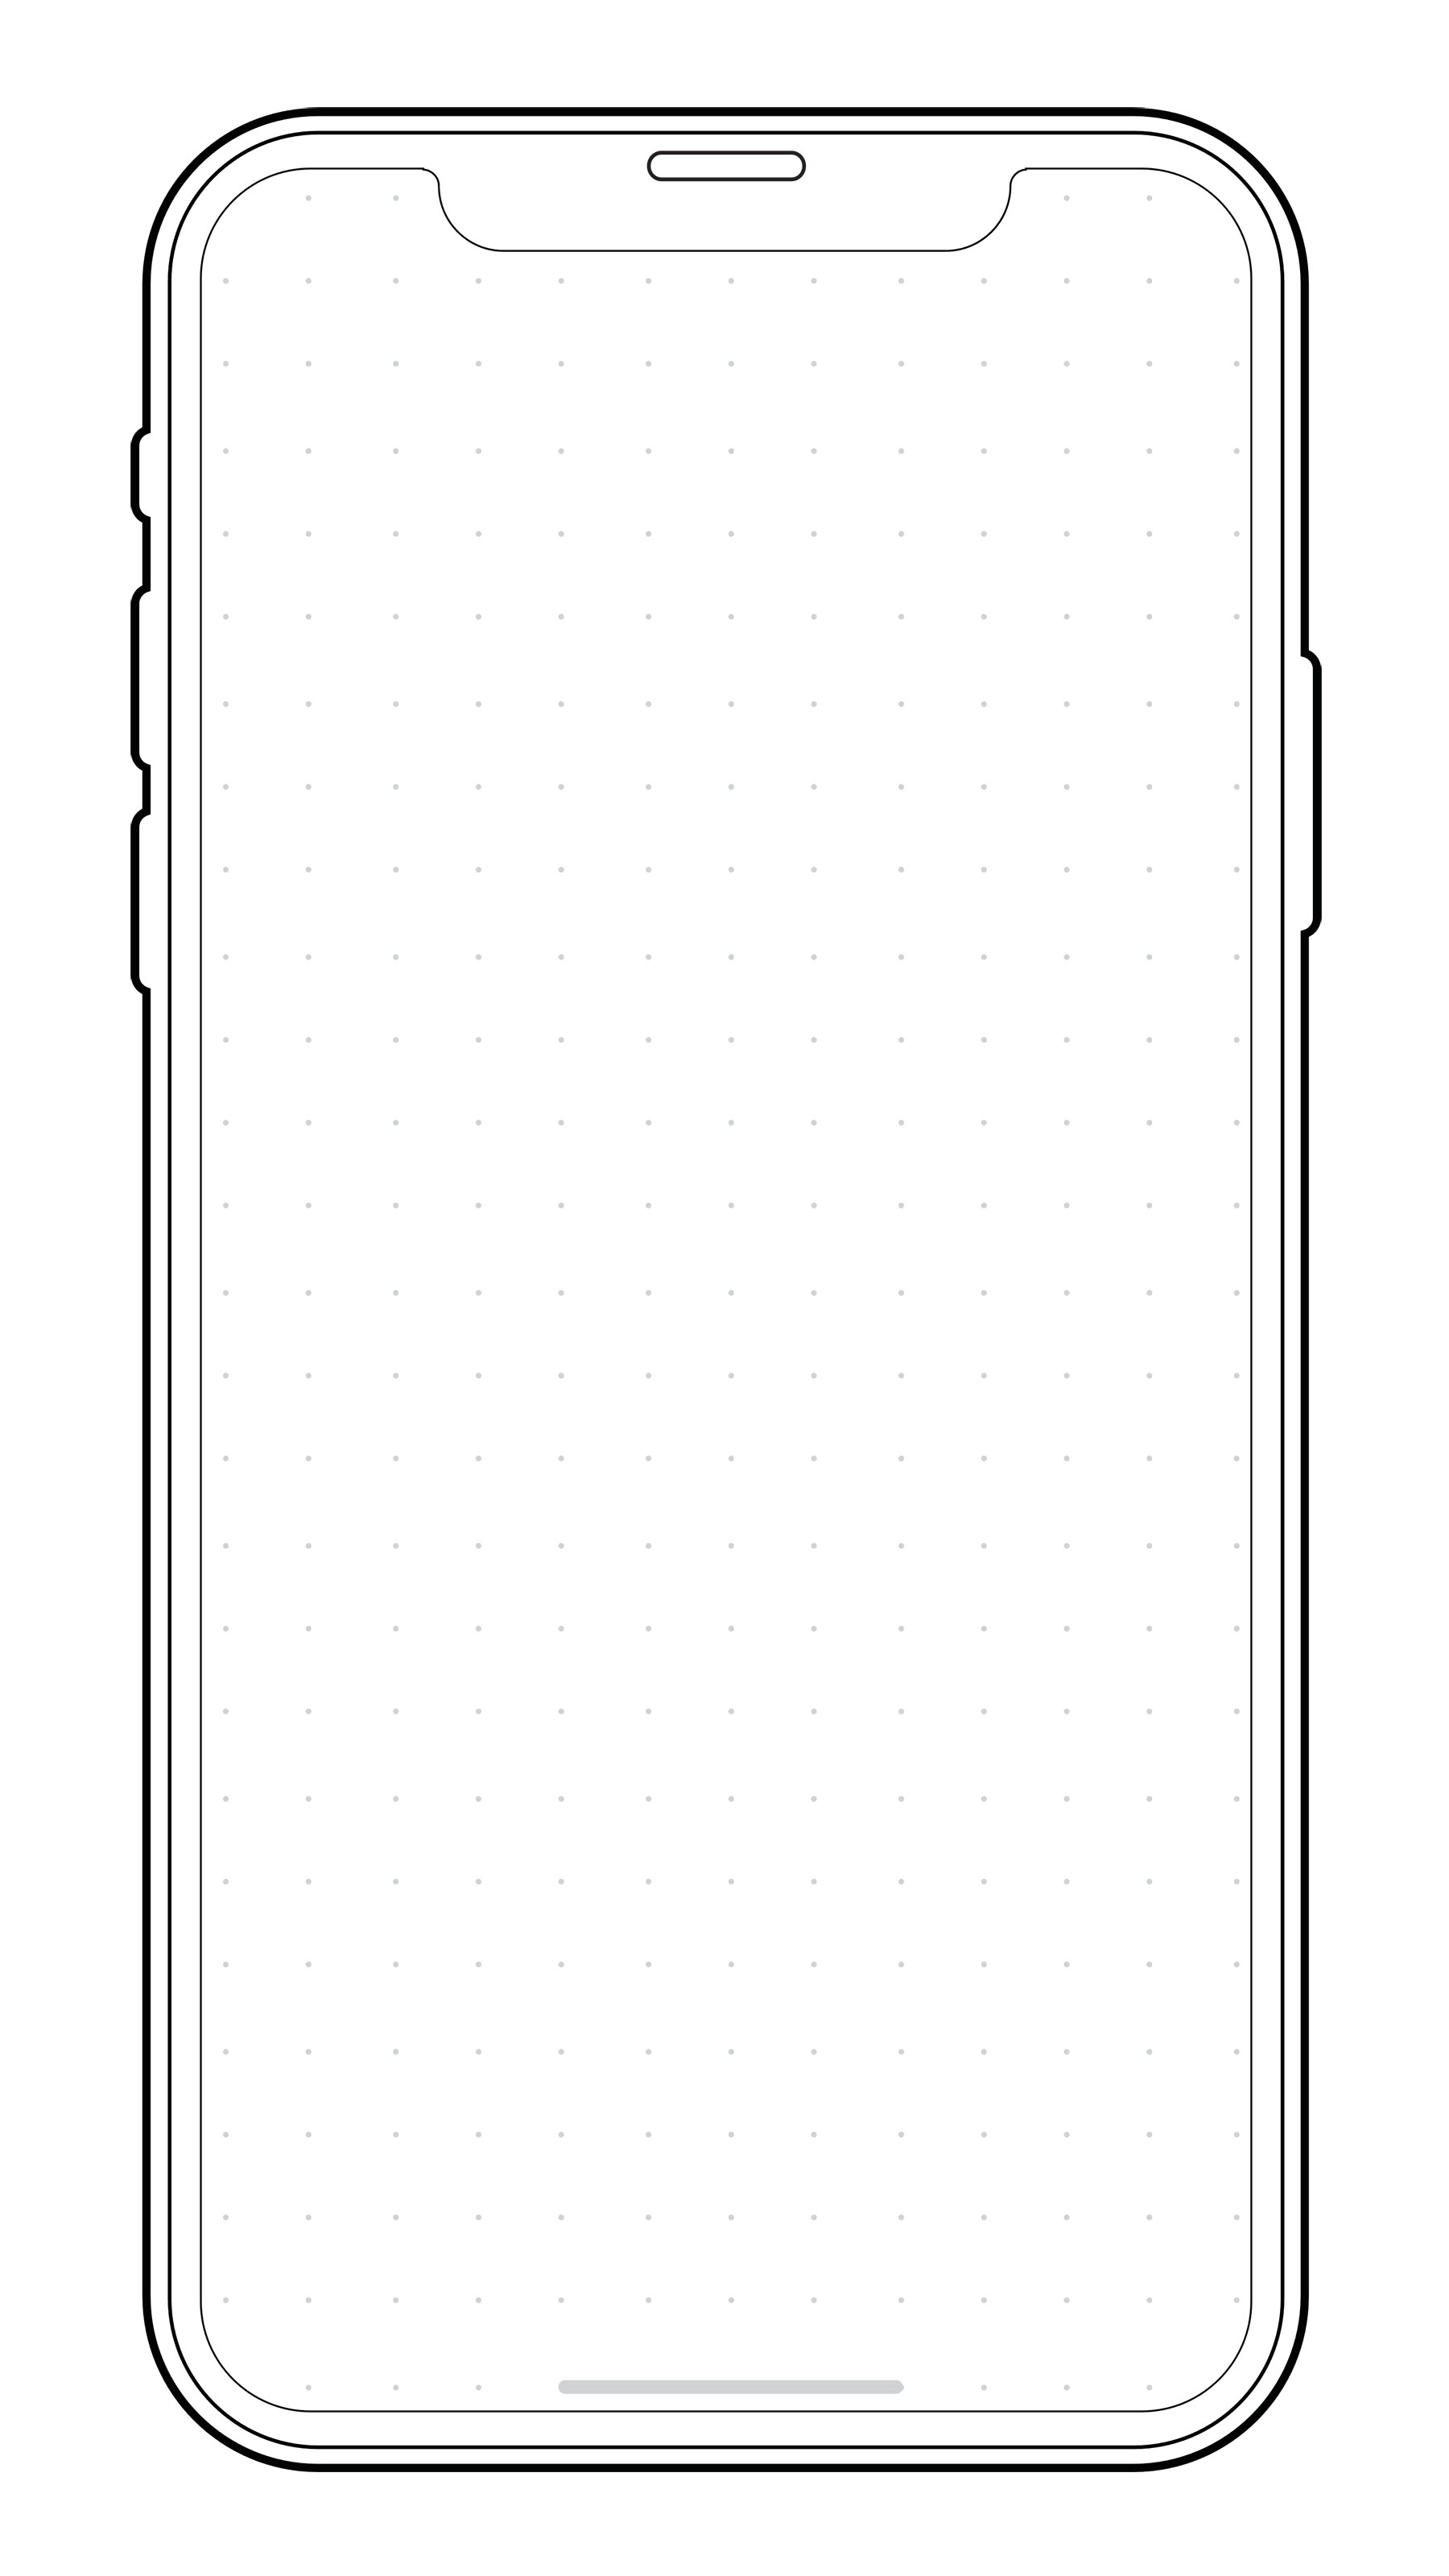 Iphone X 原型线框模板 Nicepsd 优质设计素材下载站